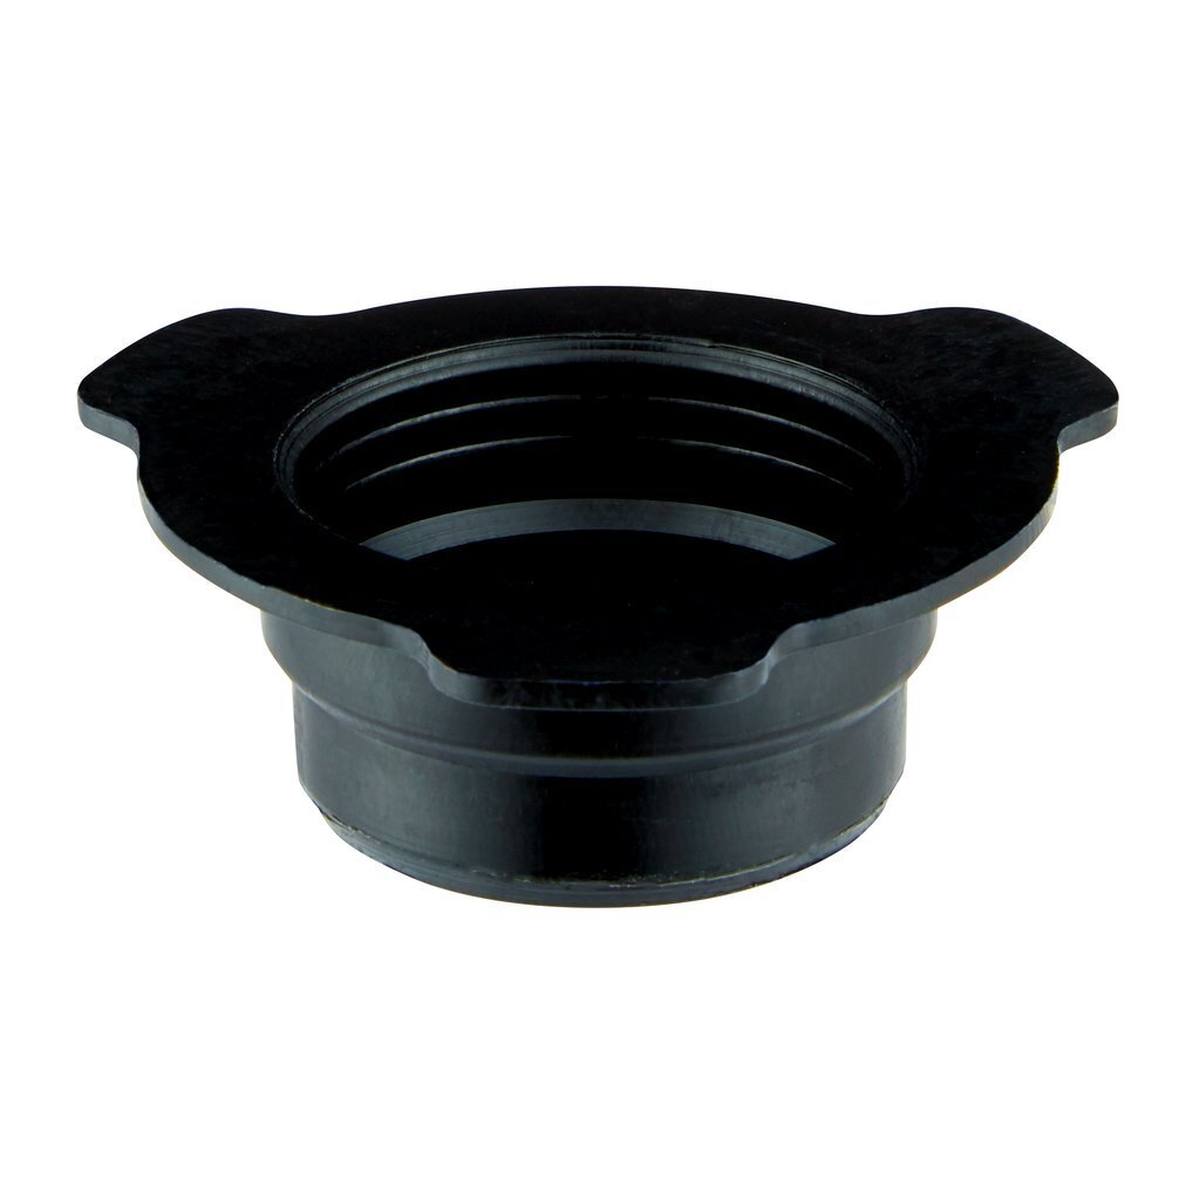 3M PPS Juego UV serie 2.0, estándar, 650 ml, filtro de 200Î¼, 50 vasos interiores / 50 tapas / 32 tapones / 1 vaso exterior #26710